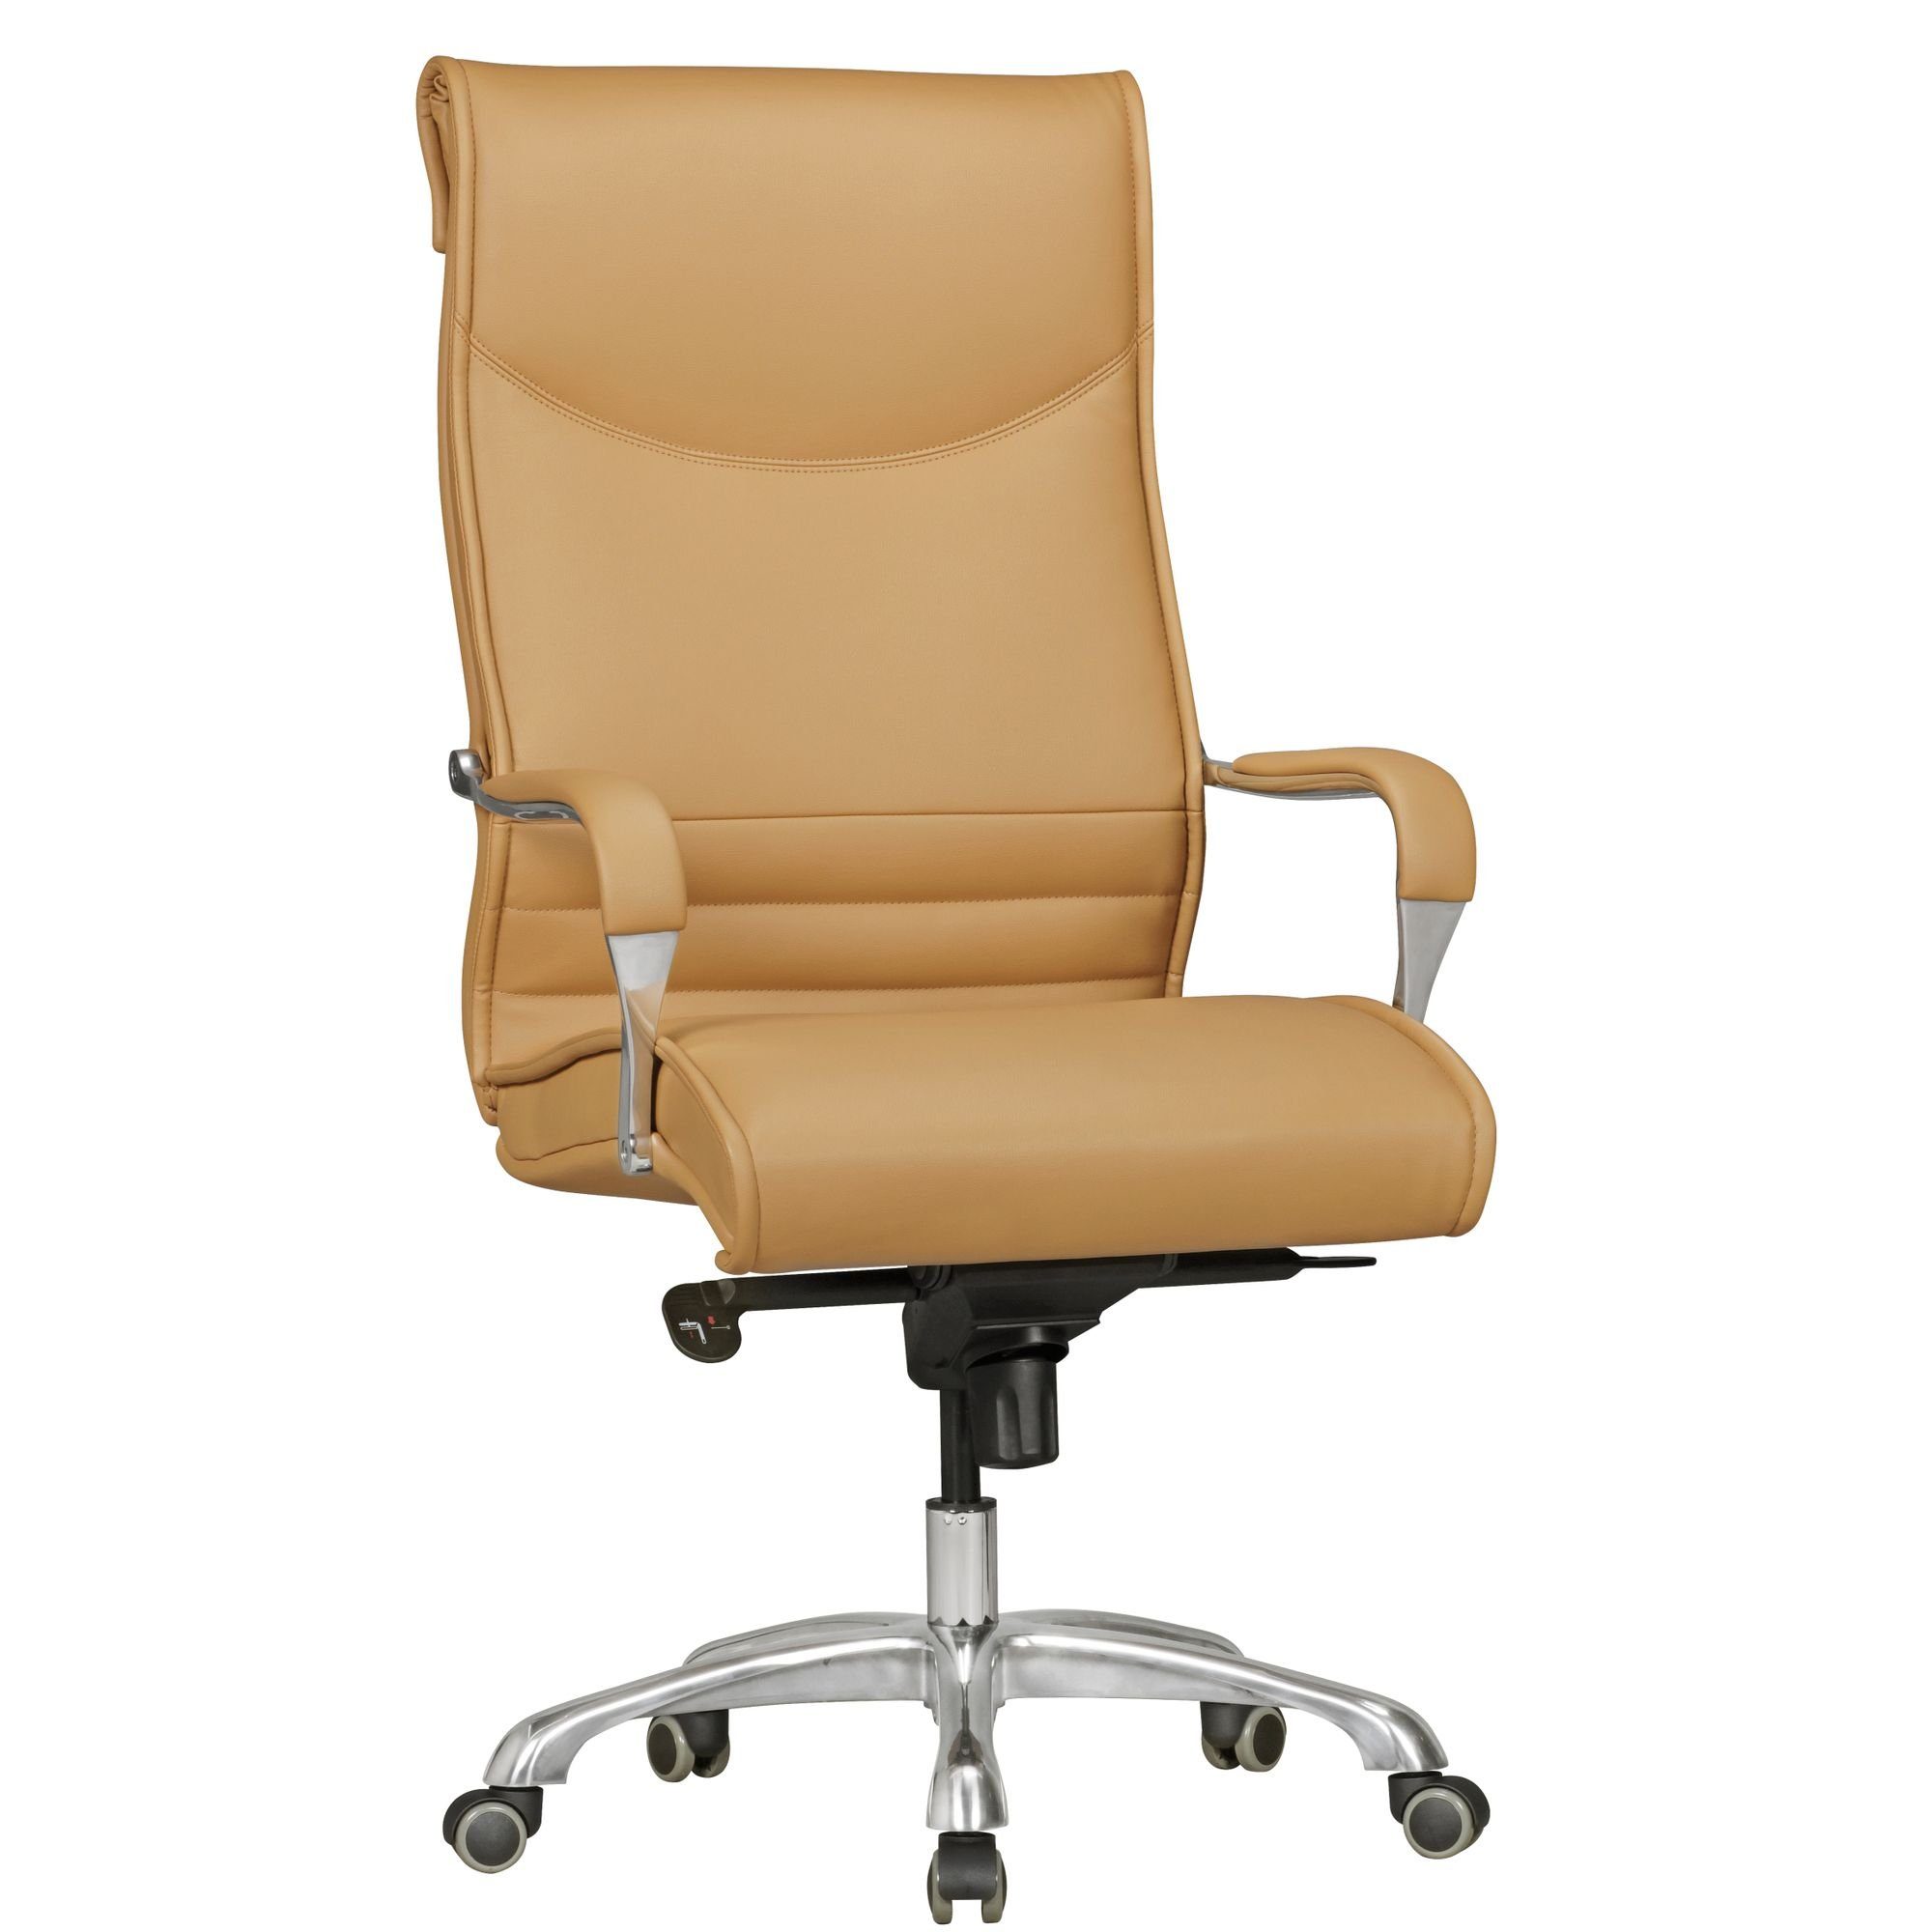 KADIMA DESIGN Chefsessel Chefsessel - Komfortabler Arbeitssessel für ergonomisches Sitzen Braun | Beige